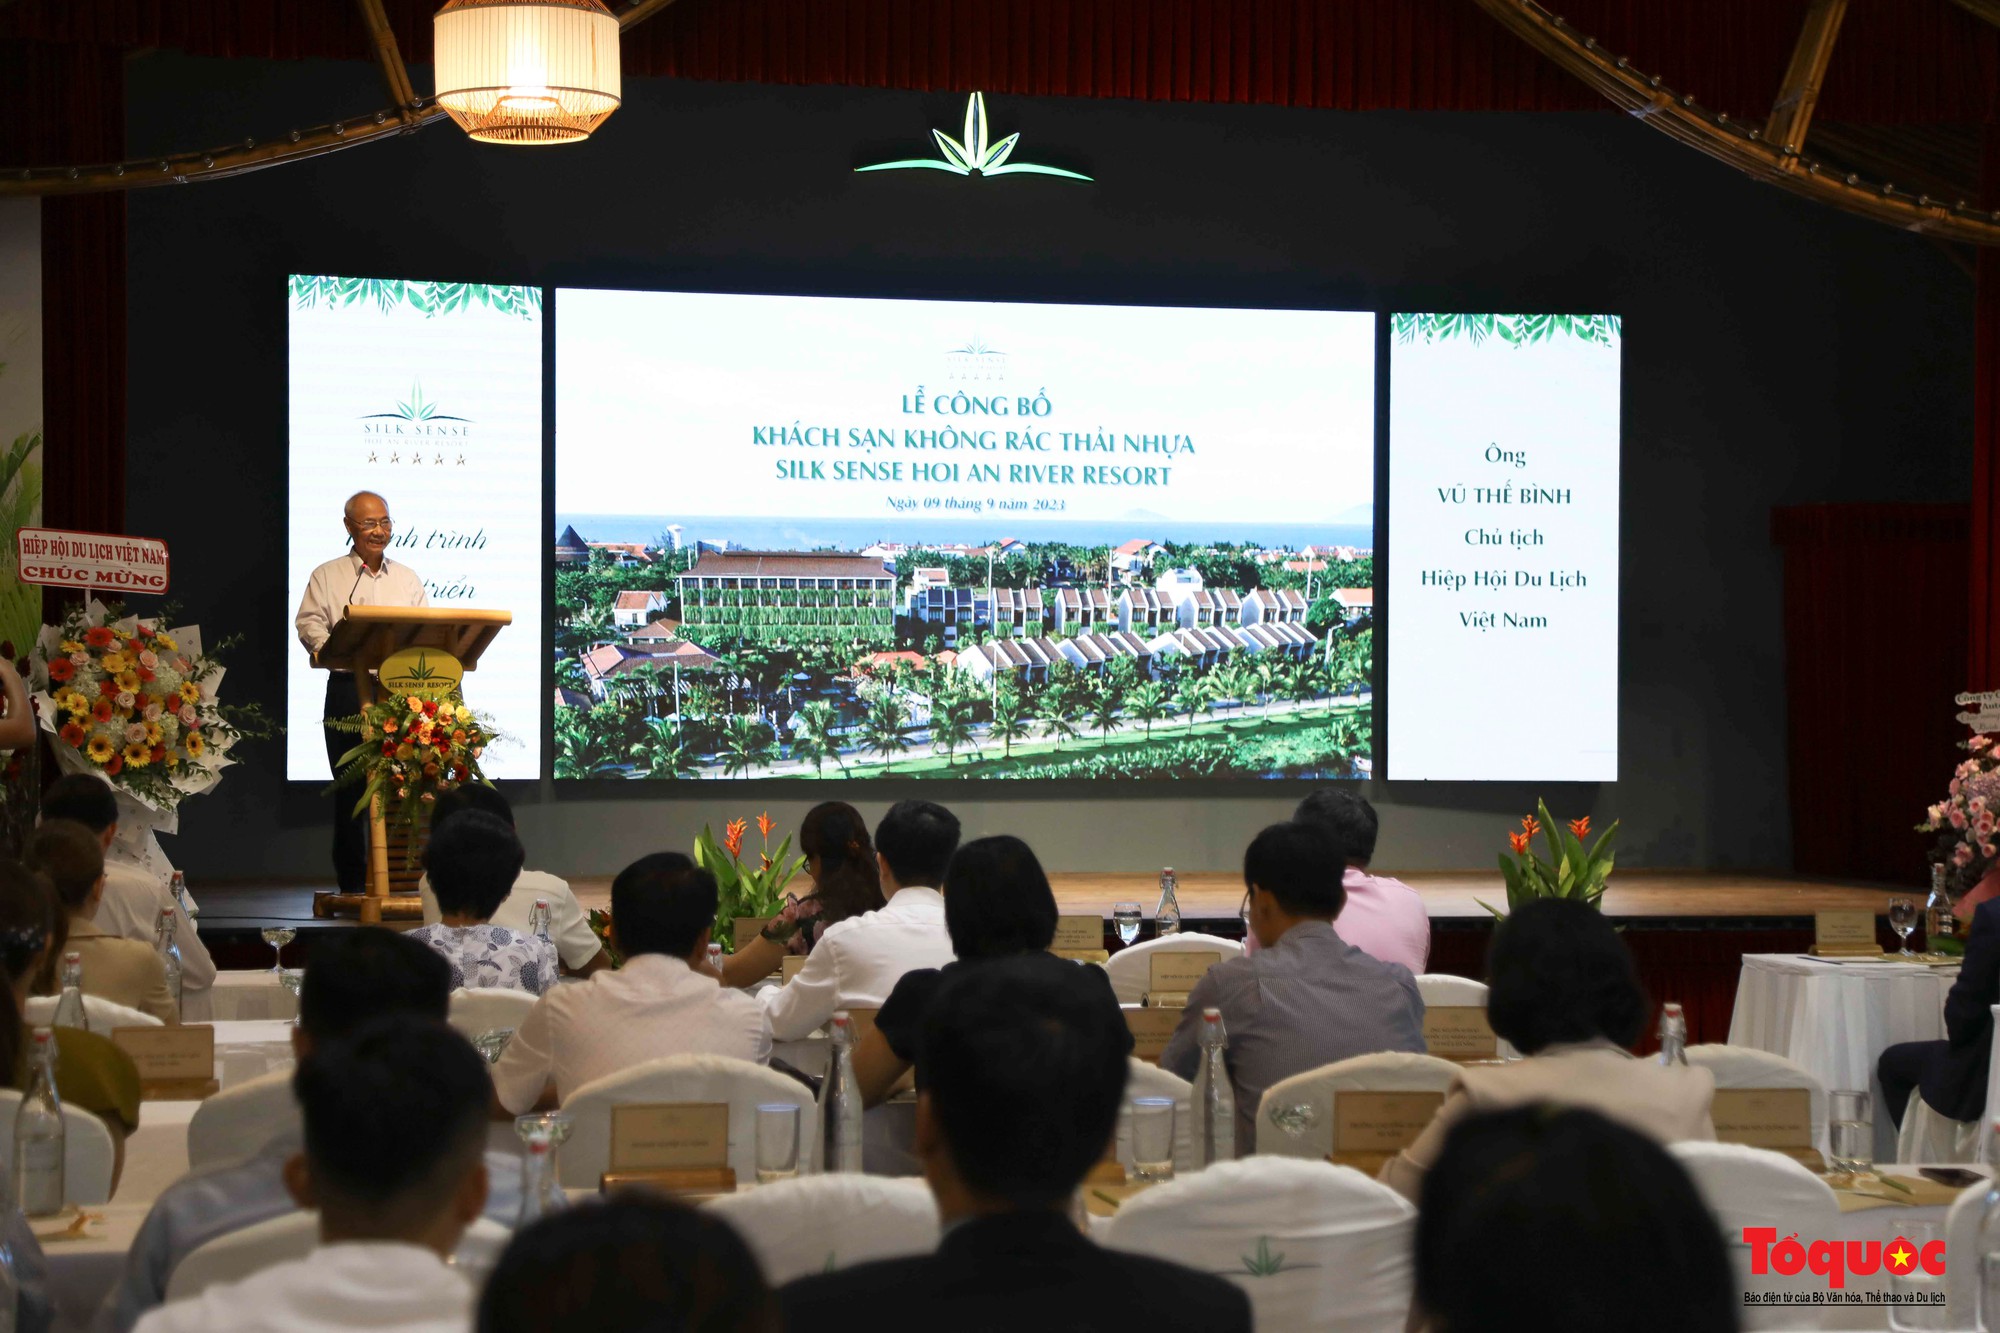 Công bố "khách sạn không rác thải nhựa" ở Hội An, Quảng Nam đang phát triển du lịch xanh đúng hướng